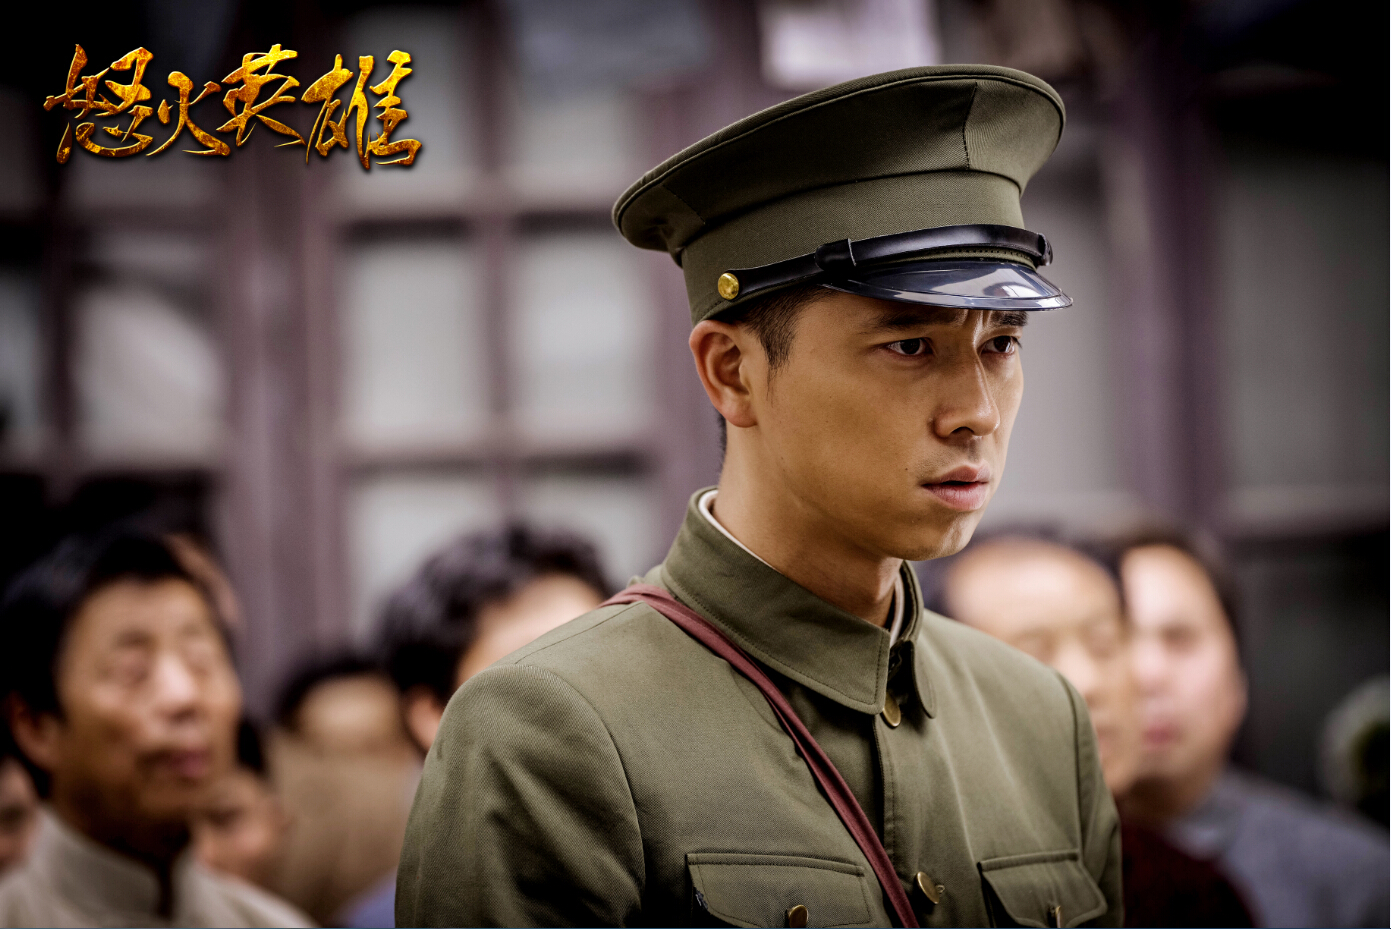 9月7日,由王雷,邓家佳主演的抗战大剧《怒火英雄》在江苏卫视开播